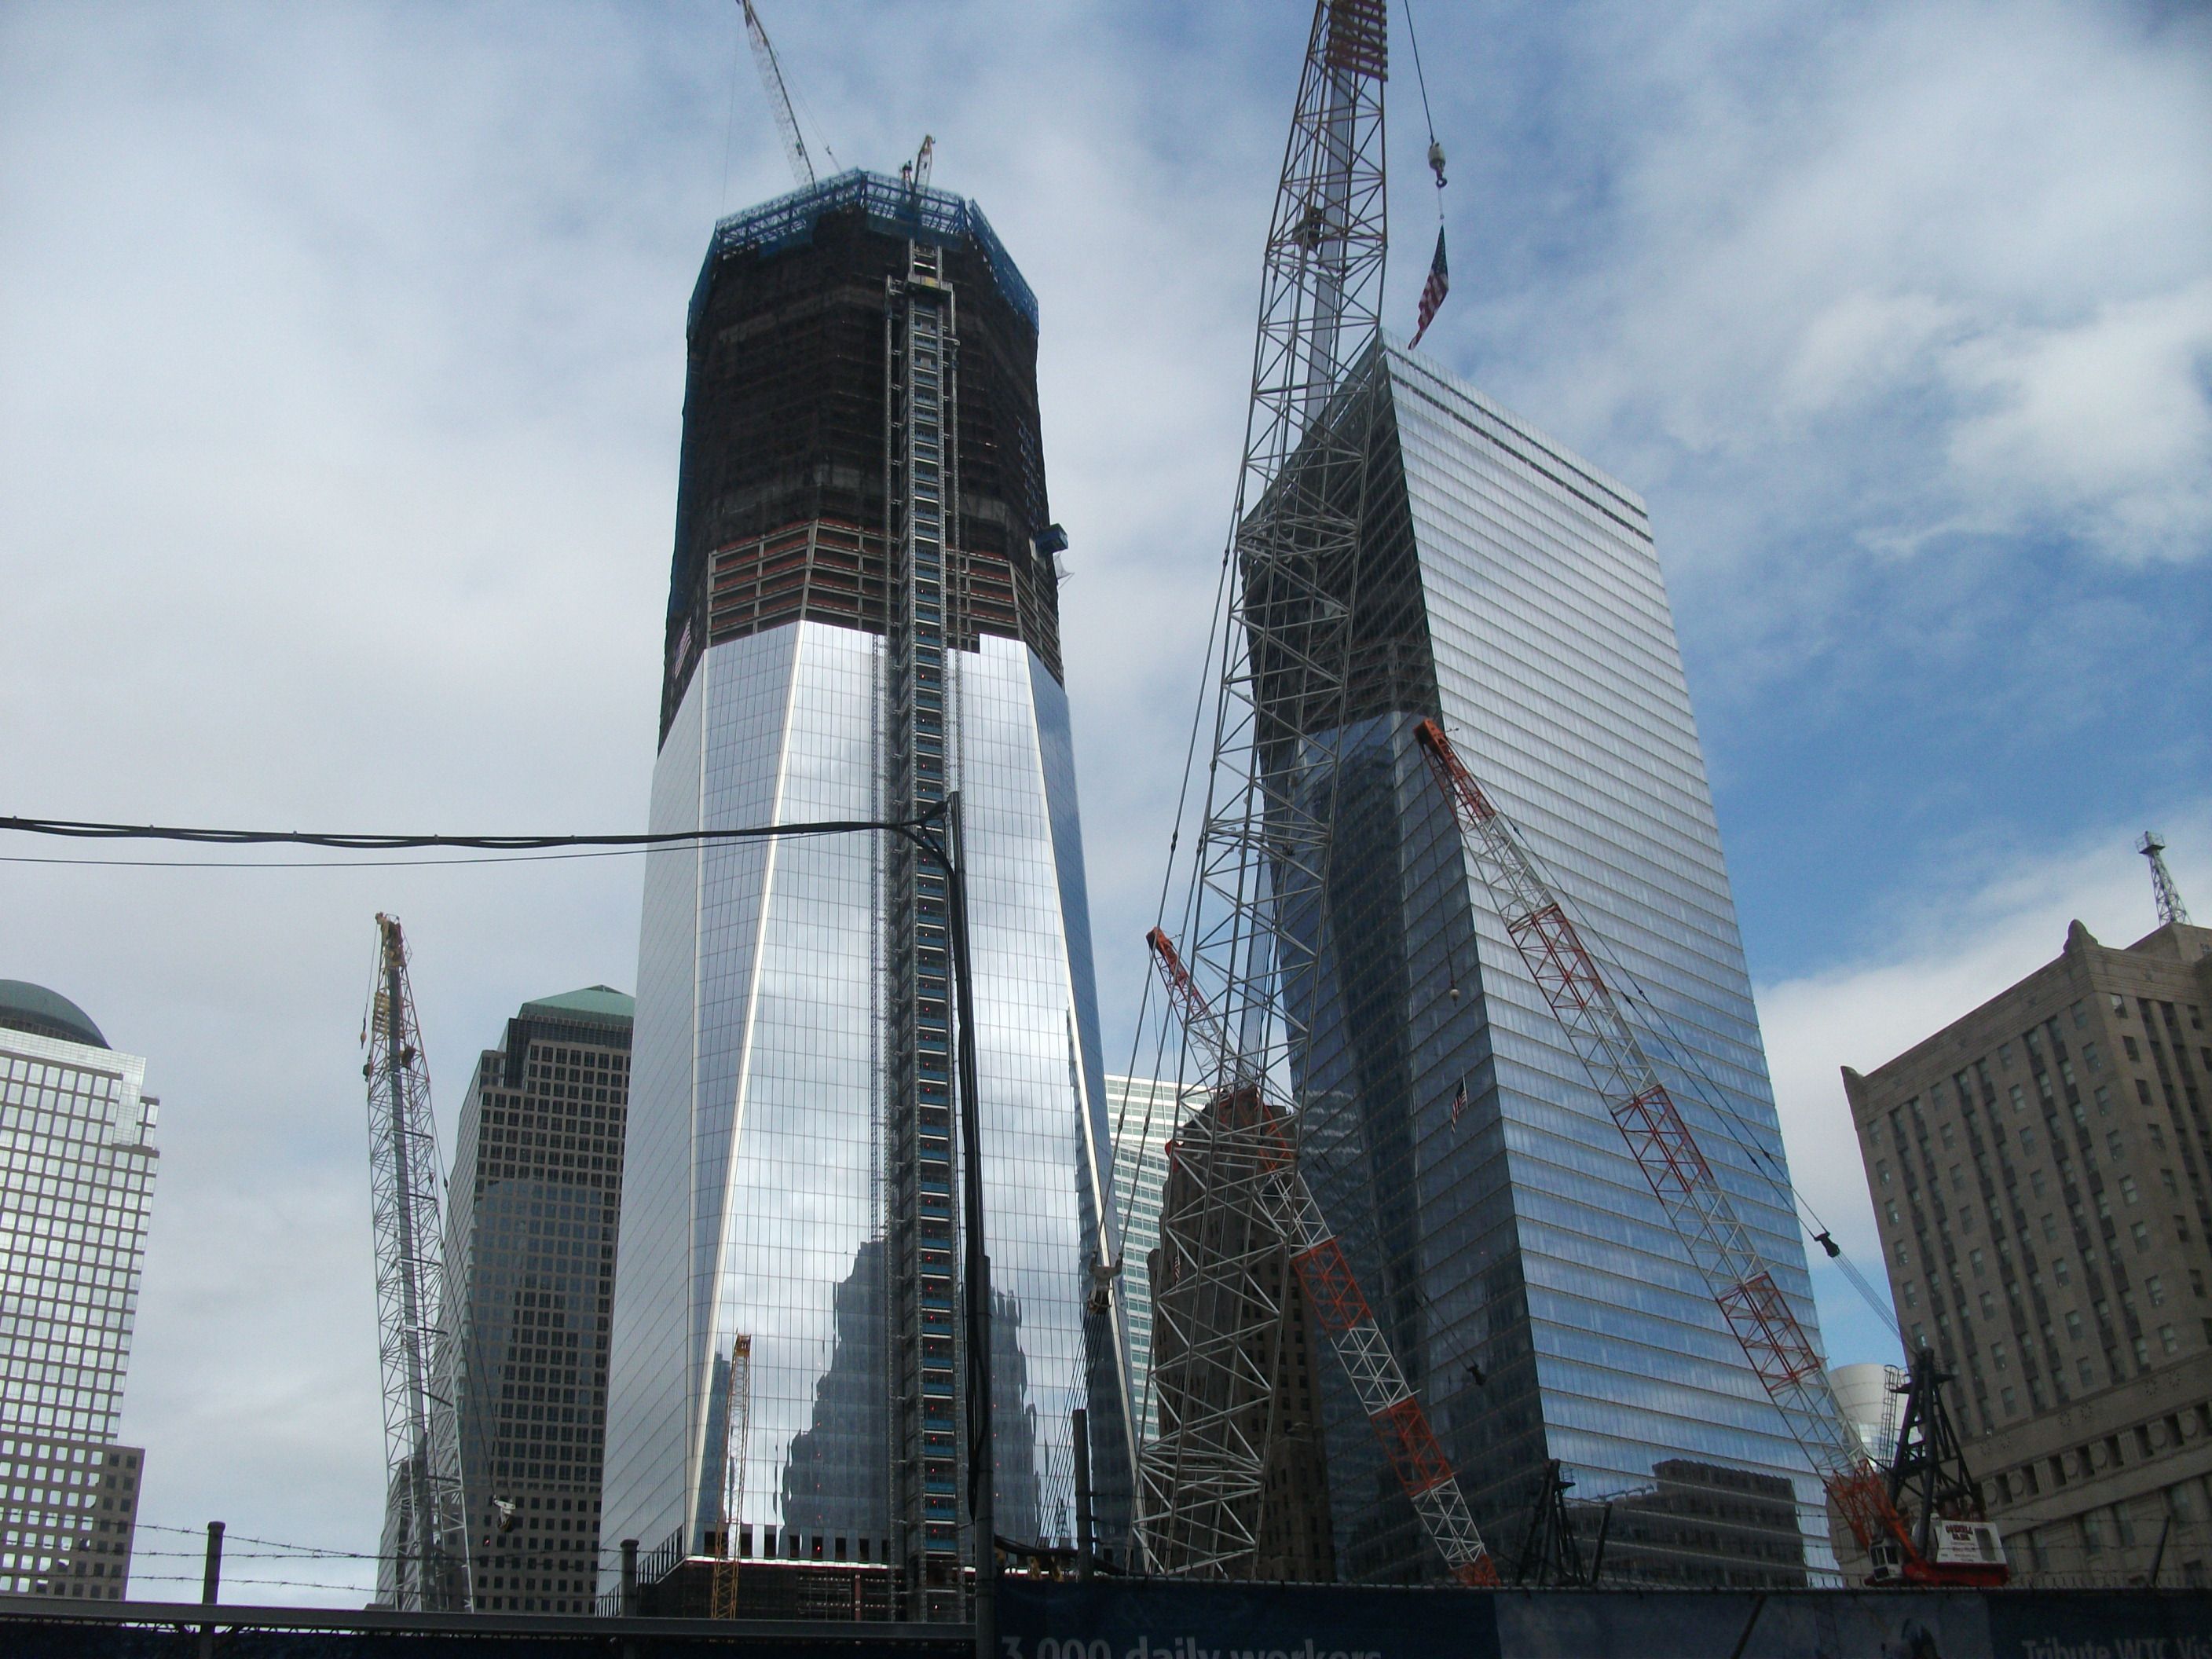 11 September 2011